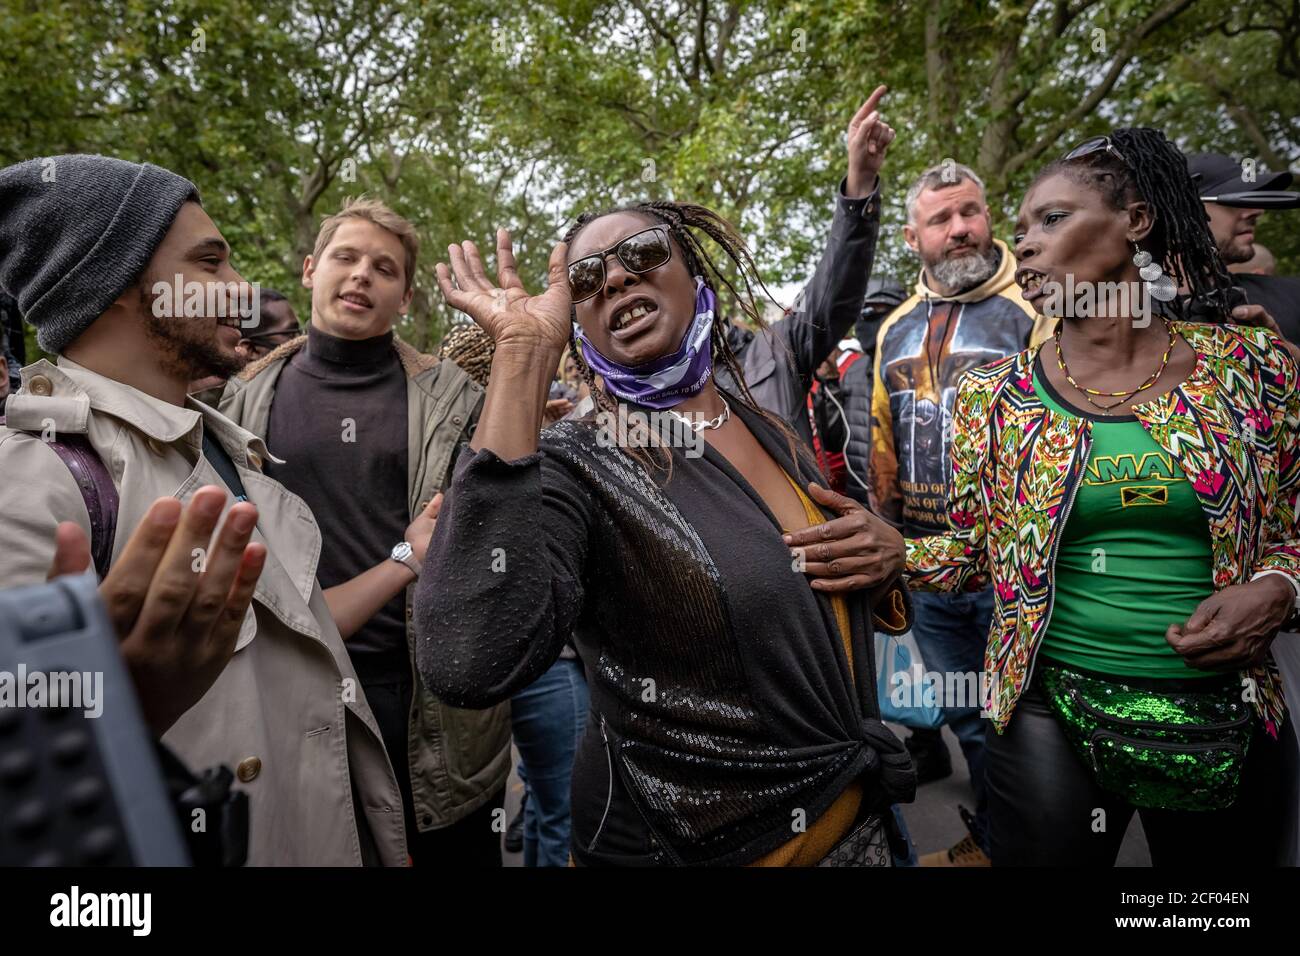 Black Lives Matters Aktivisten (abgebildet) kollidieren mit der Vertretung weiblicher Fans in Speakers' Corner, Hyde Park, London, Vereinigtes Königreich. Stockfoto